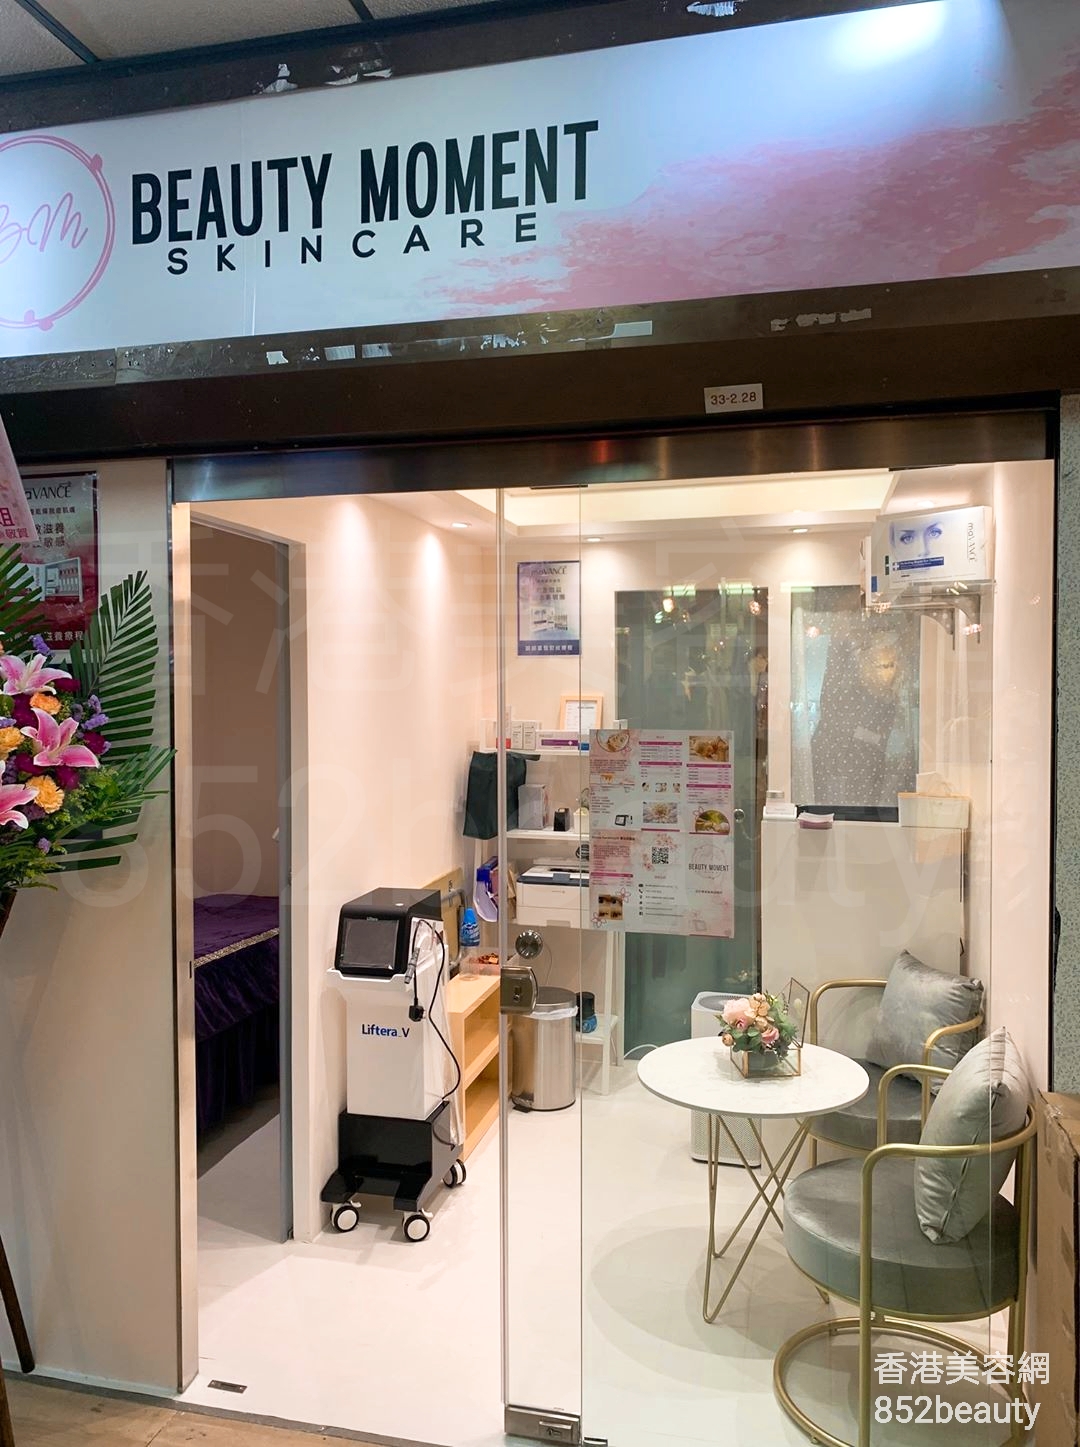 香港美容網 Hong Kong Beauty Salon 美容院 / 美容師: Beauty Moment Skincare Centre